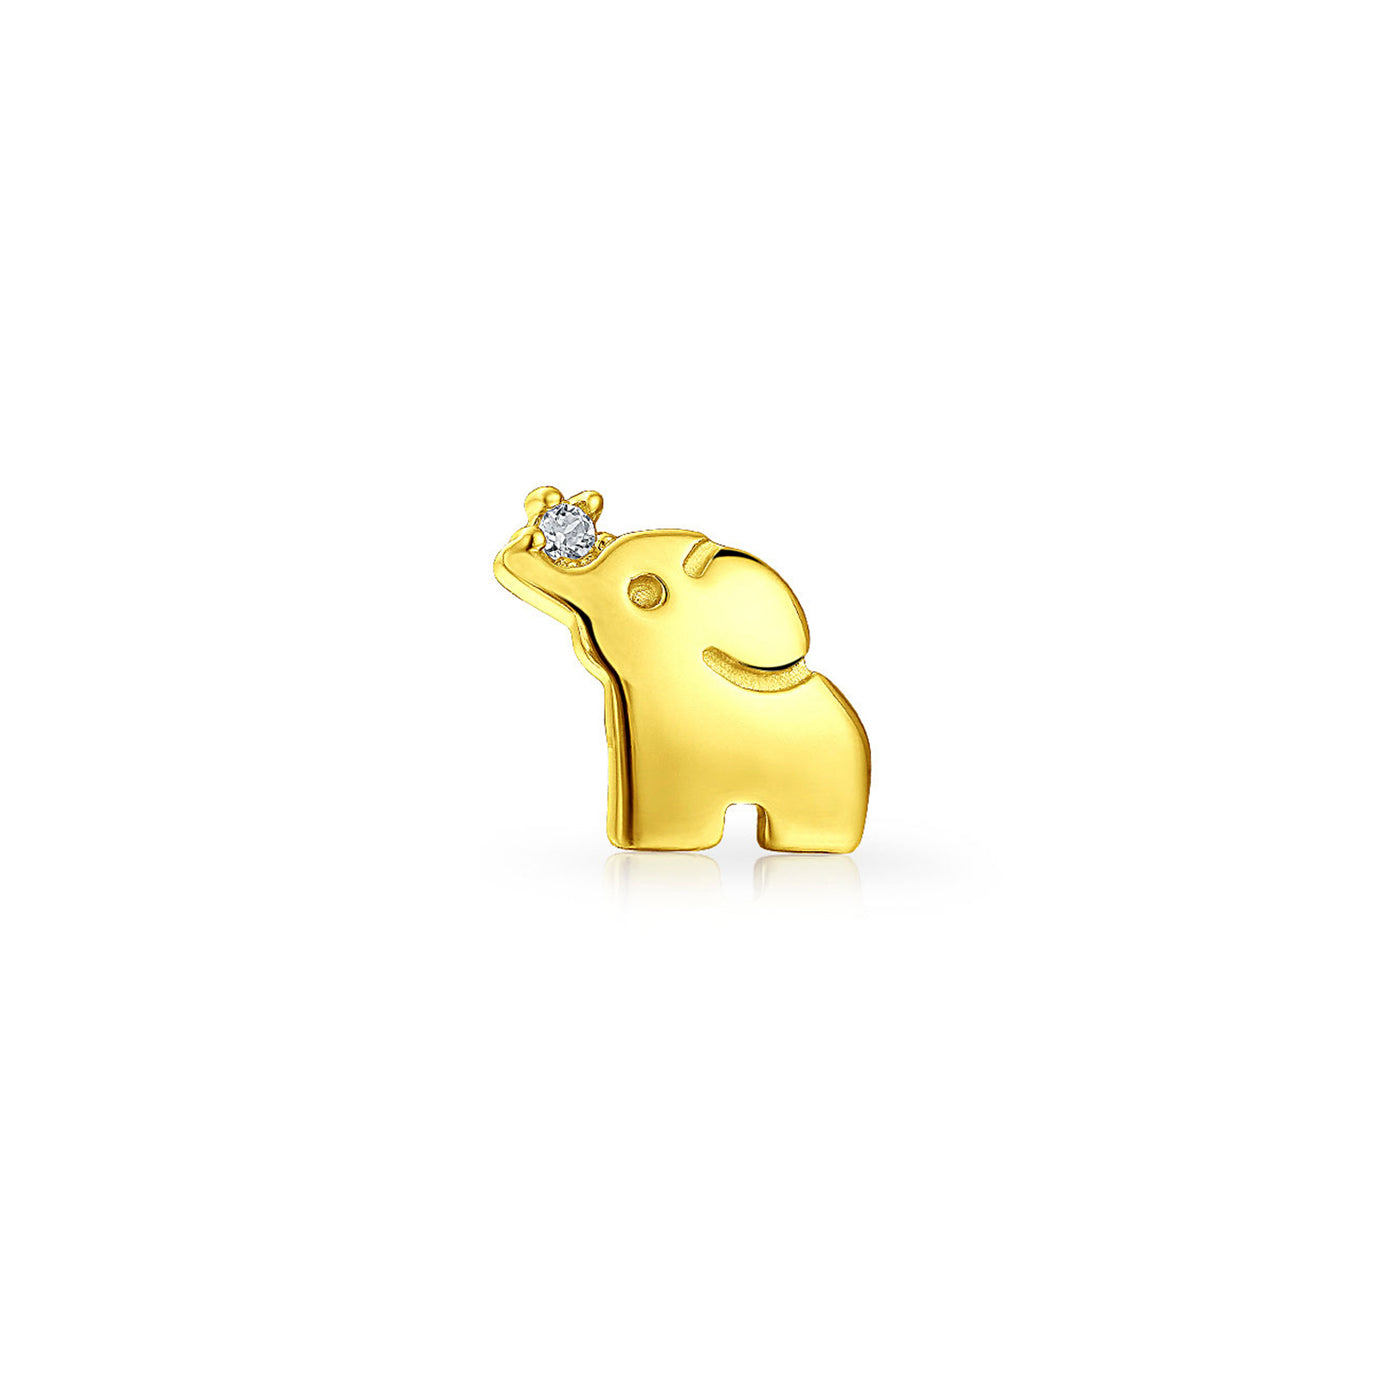 1 PC Baby Elephant